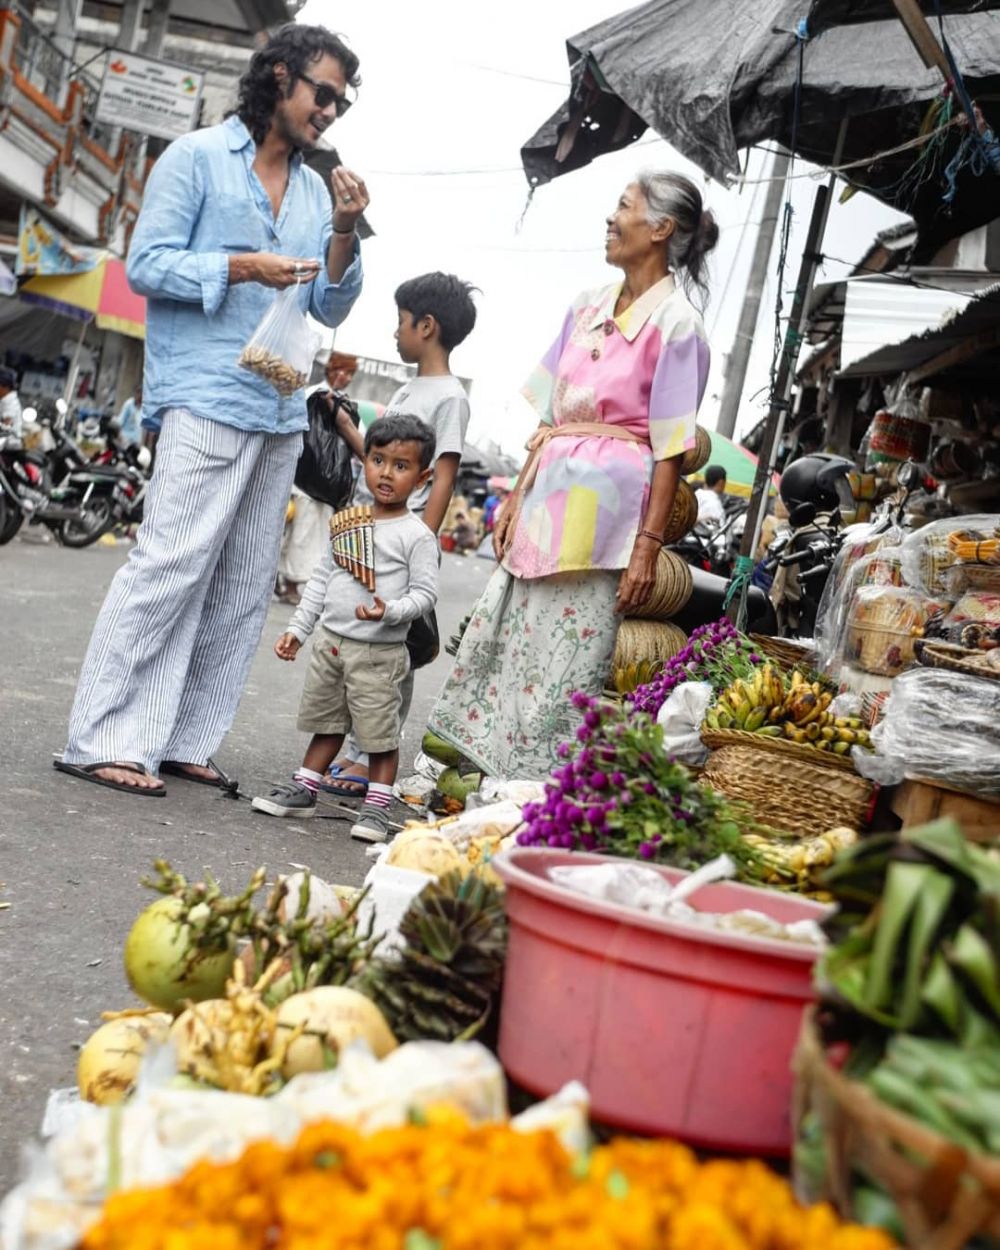 7 Momen manis keluarga Dwi Sasono hangout ke pasar tradisional